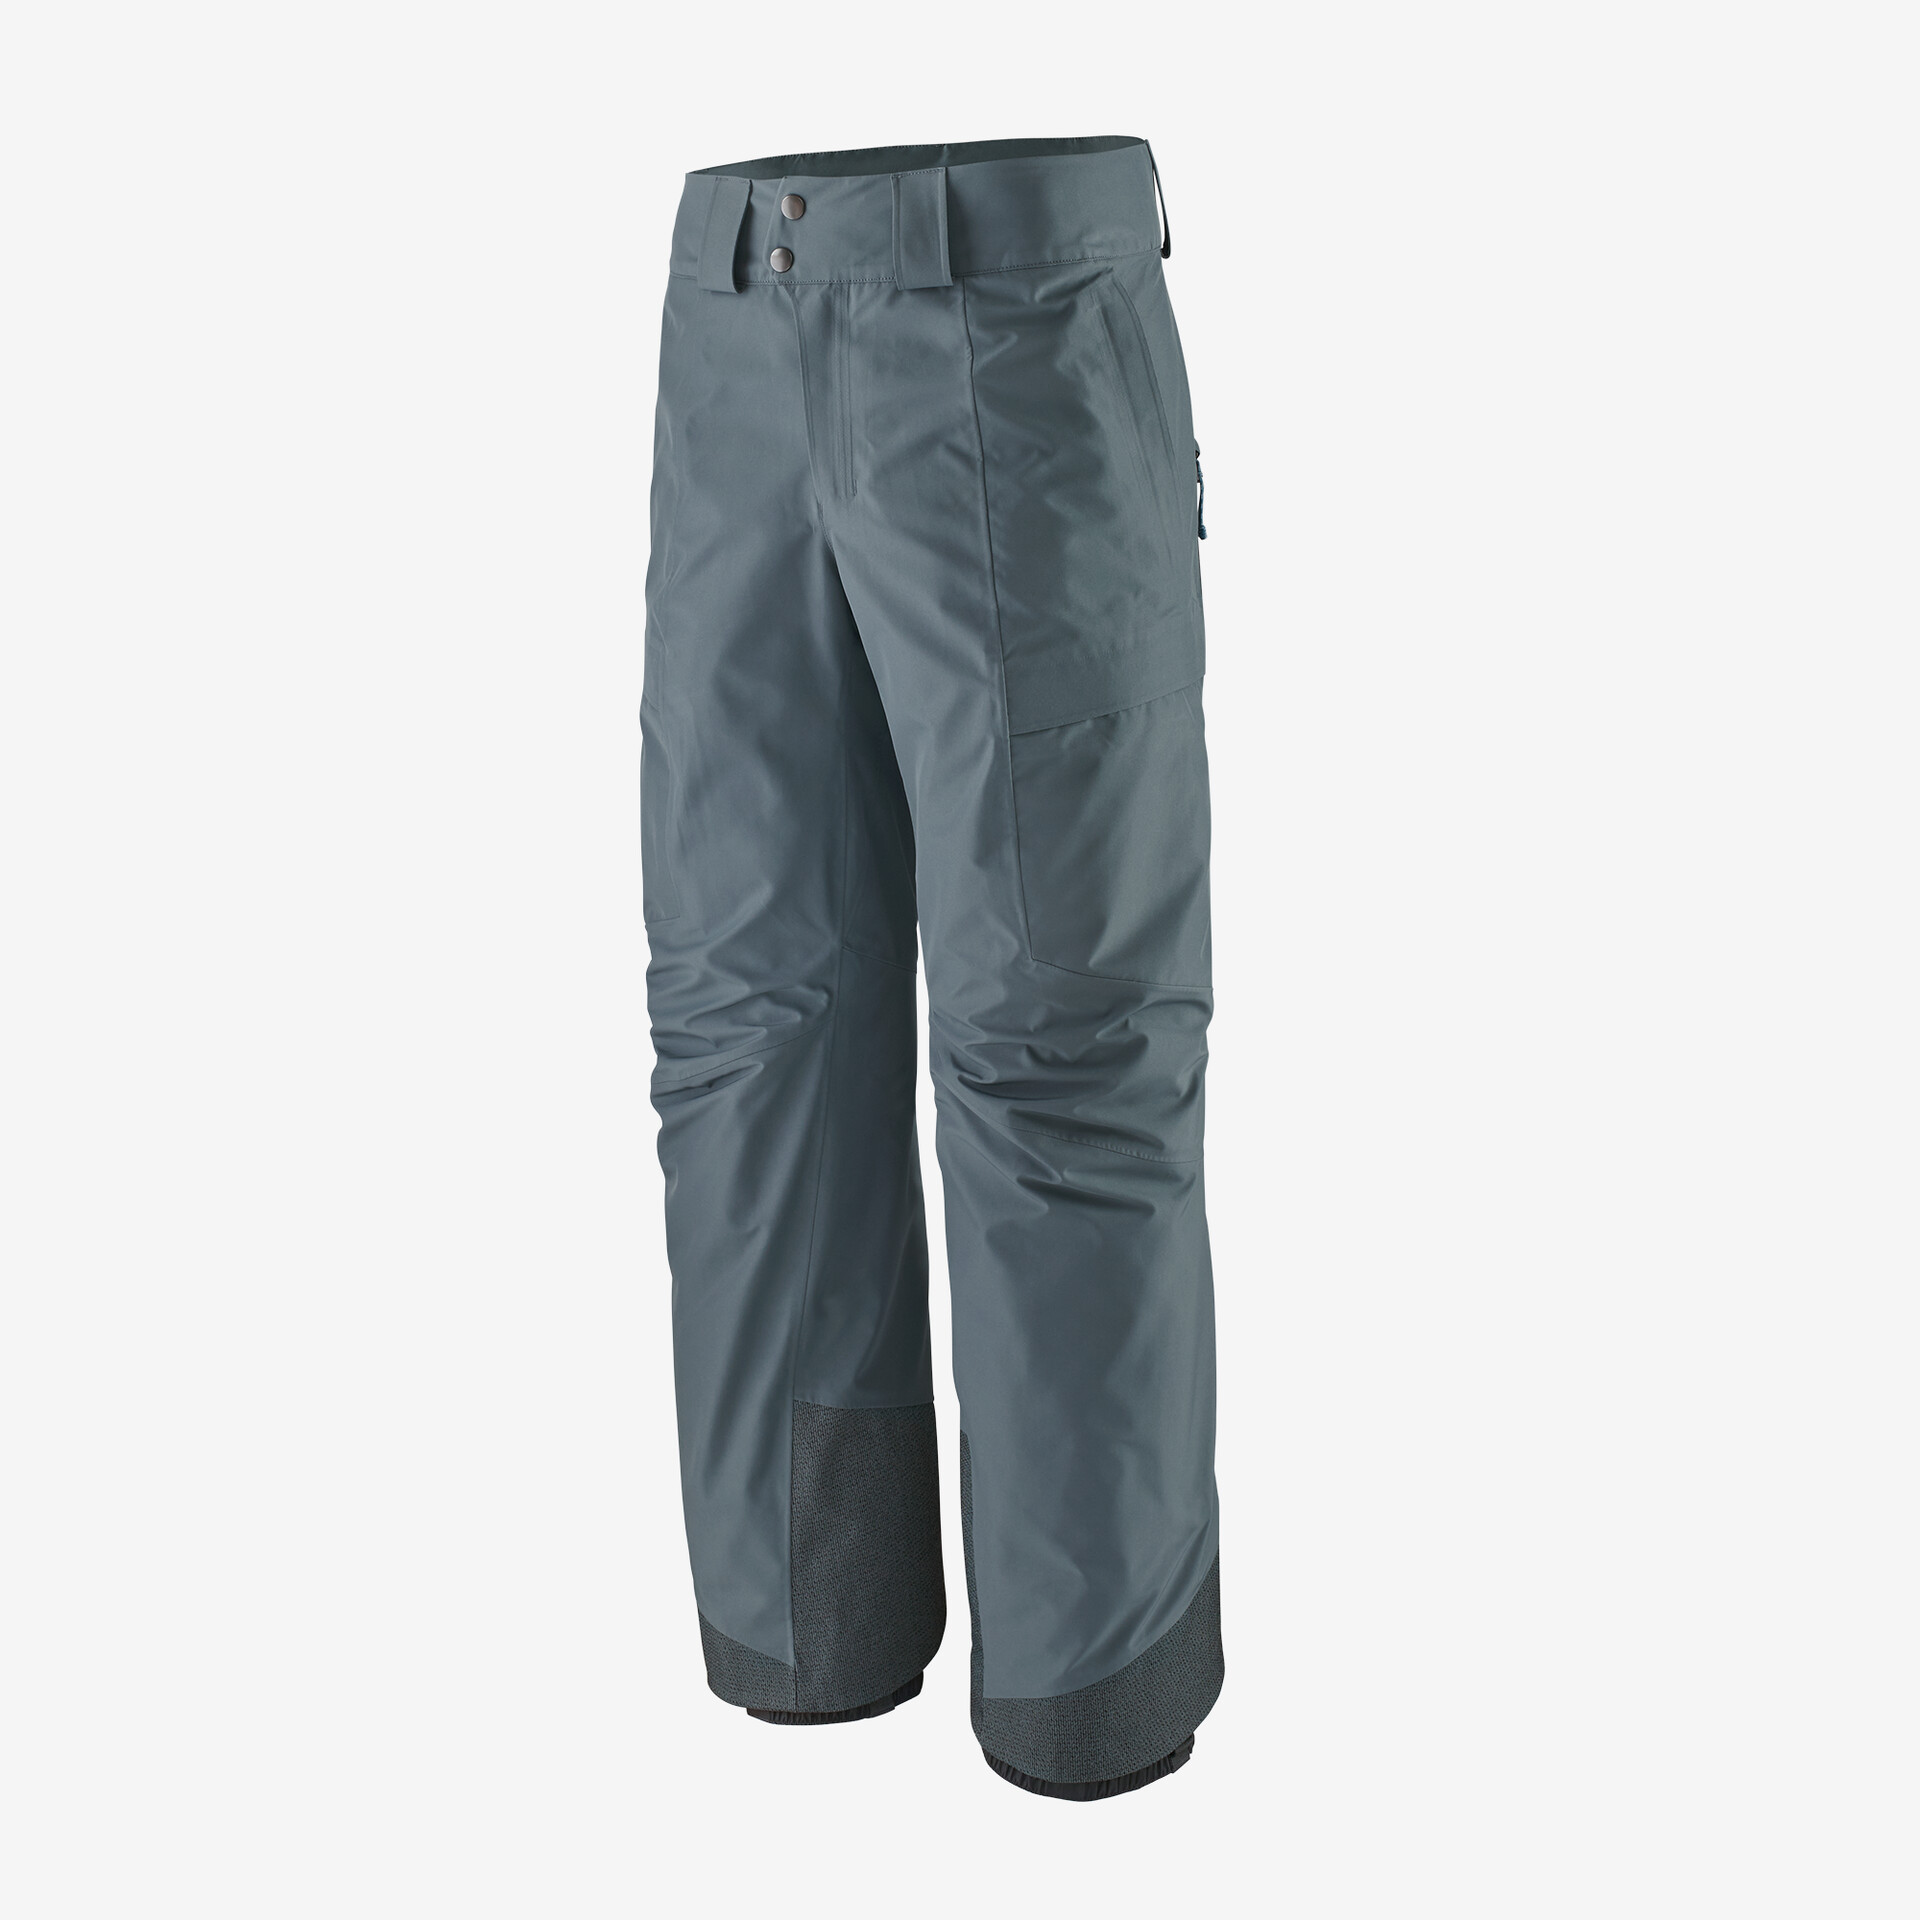 Мужские брюки Storm Shift Patagonia, серый мужские брюки storm shift patagonia мус коричневый